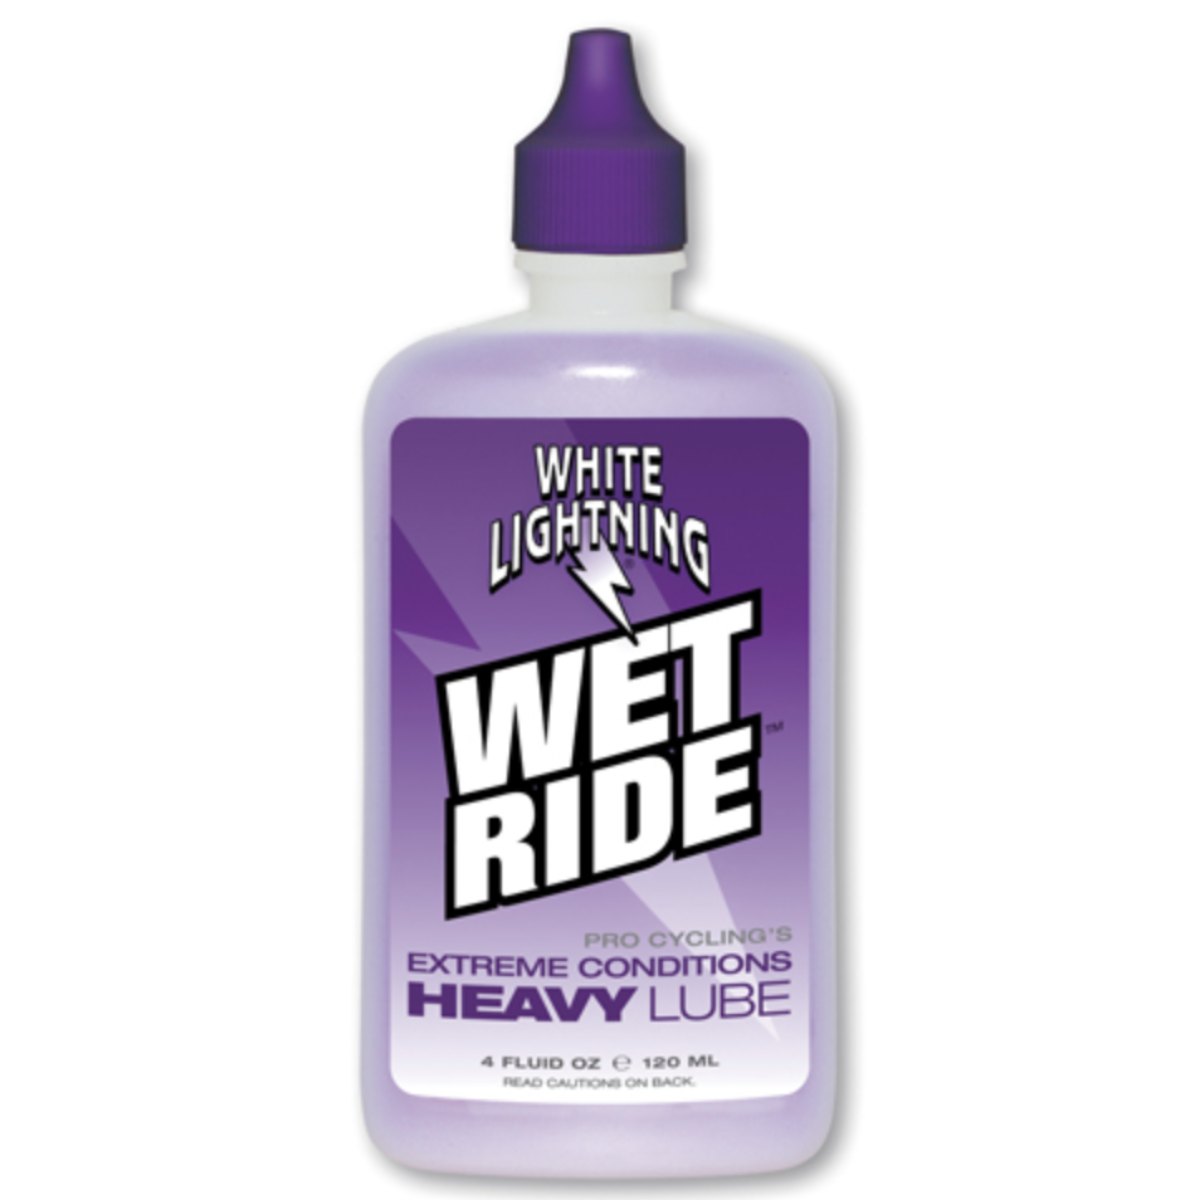 White Lightning Wet Ride Lube - 4oz